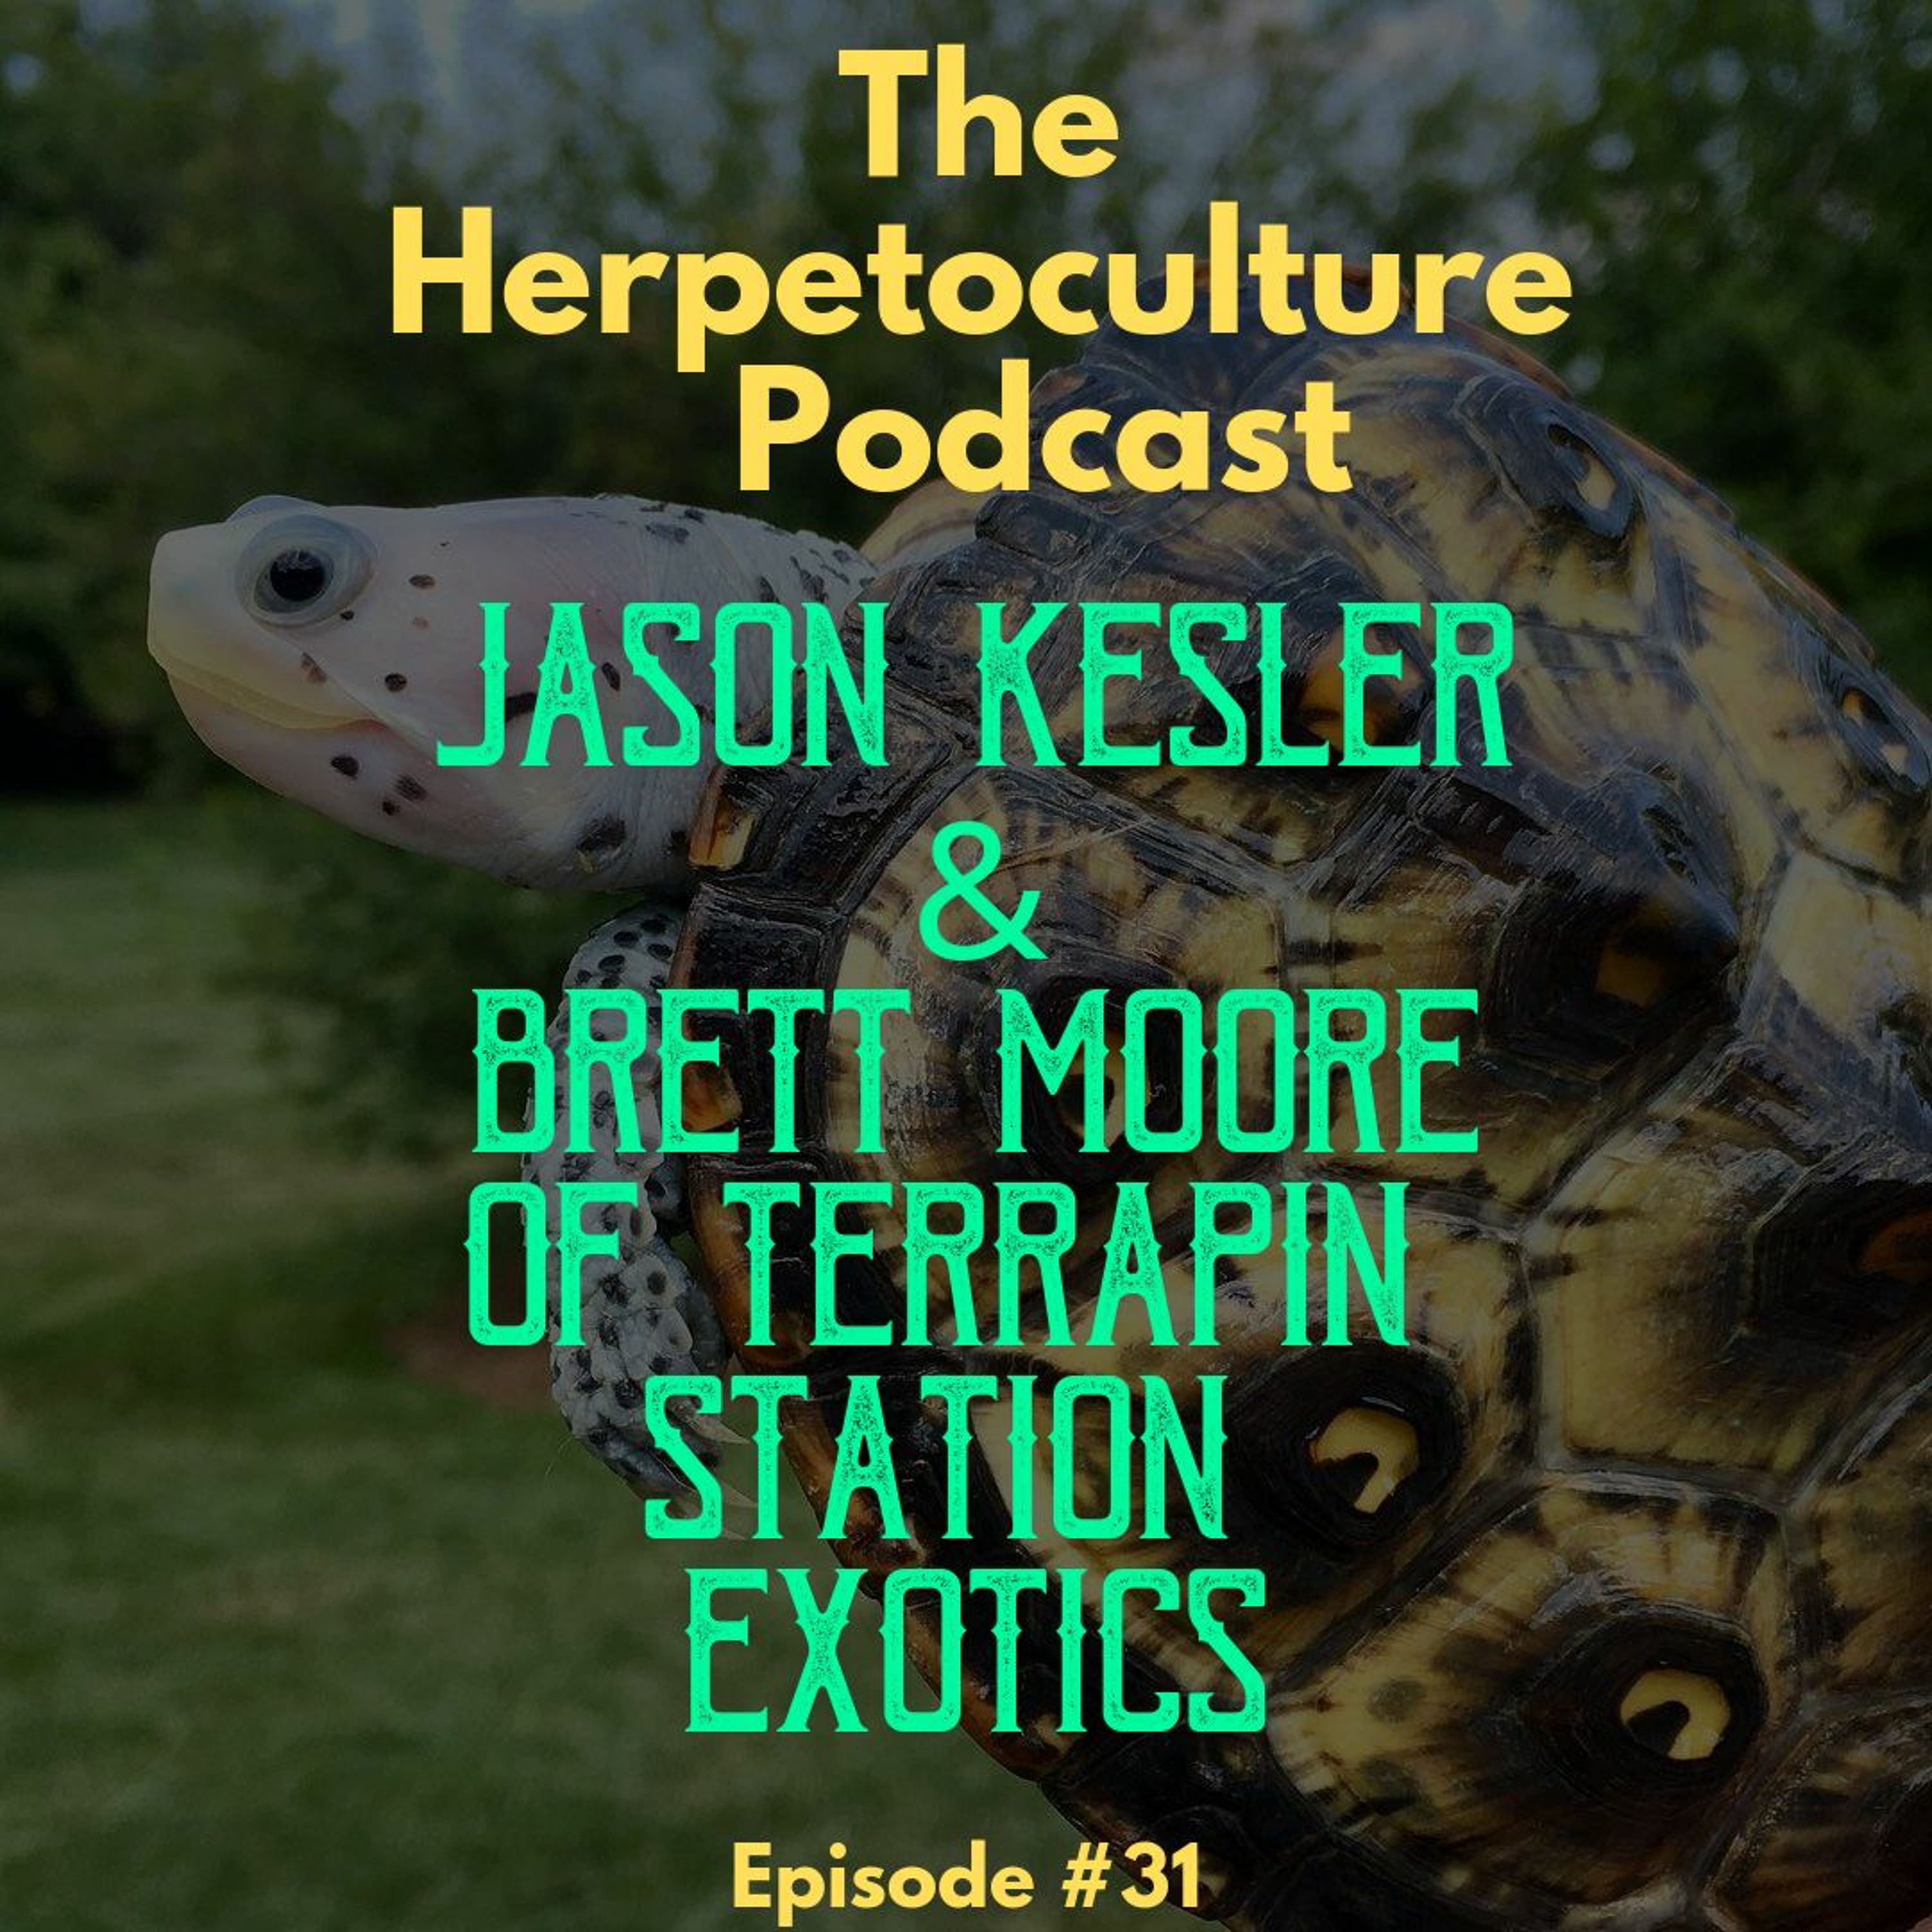 Jason Kesler & Brett Moore of Terrapin Station Exotics